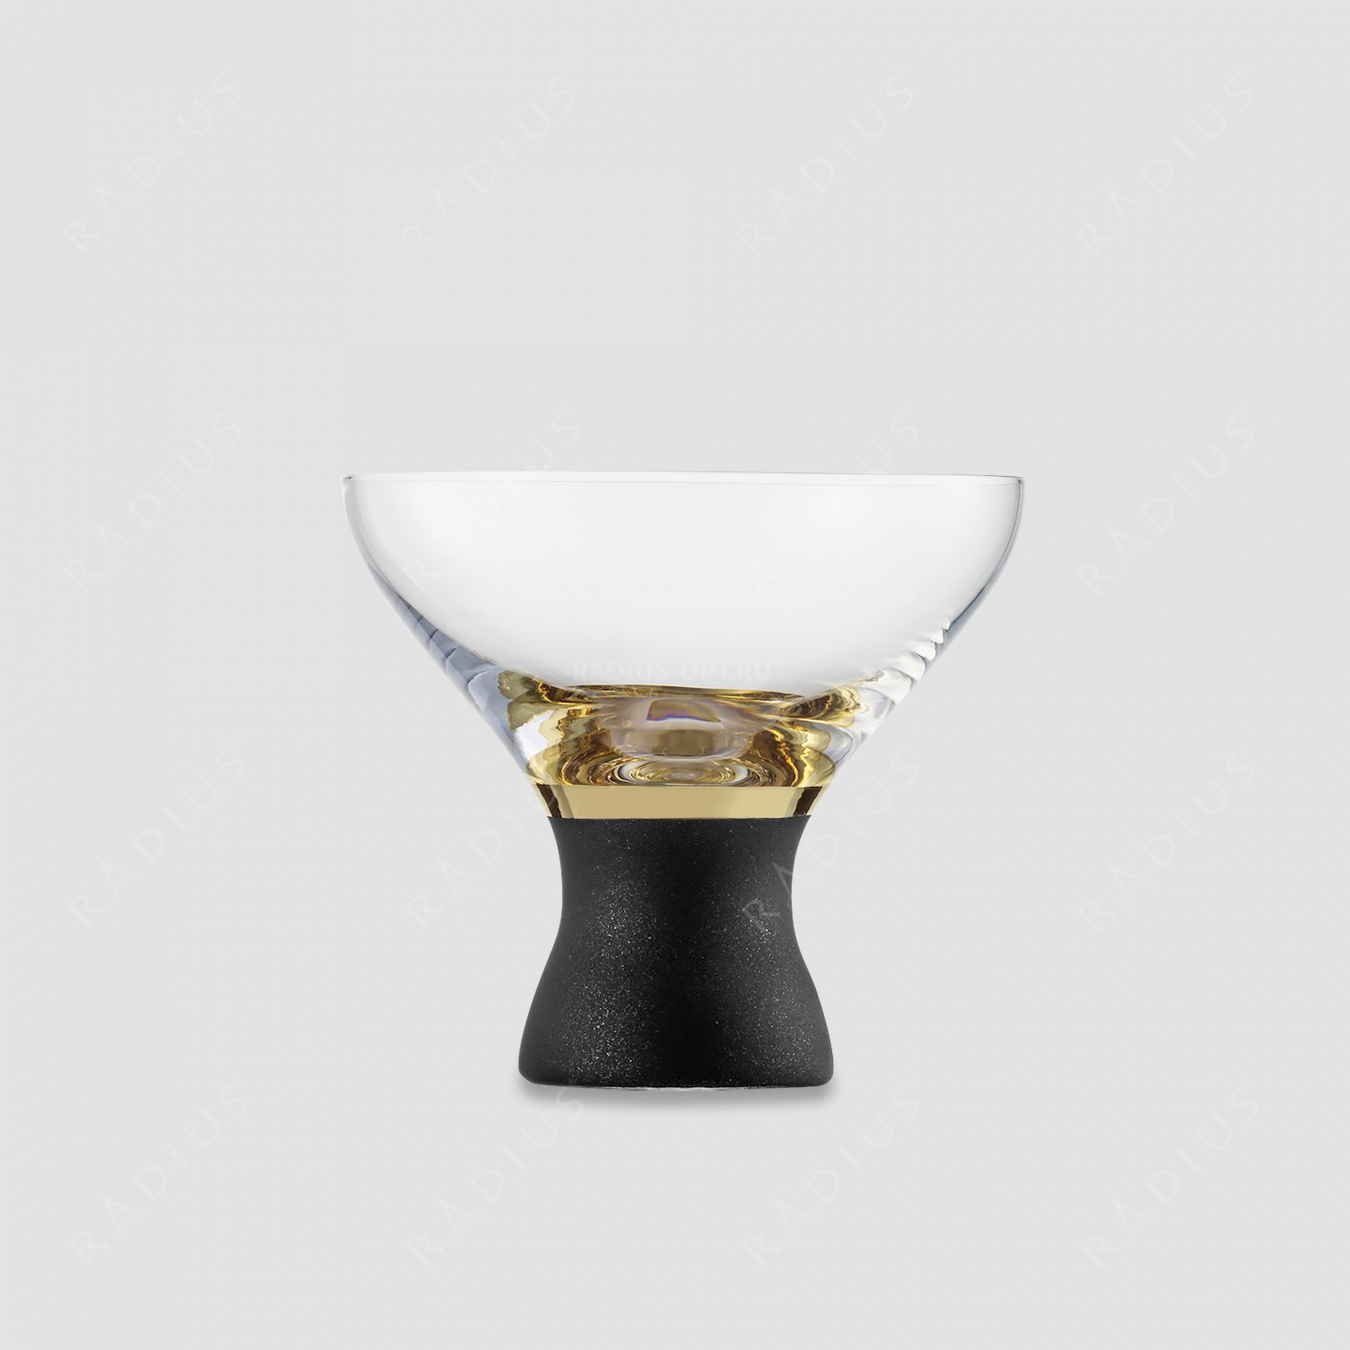 Креманка Gold, объем: 330 мл, материал: бессвинцовый хрусталь, цвет: черный/золото, серия Cosmo, EISCH, Германия